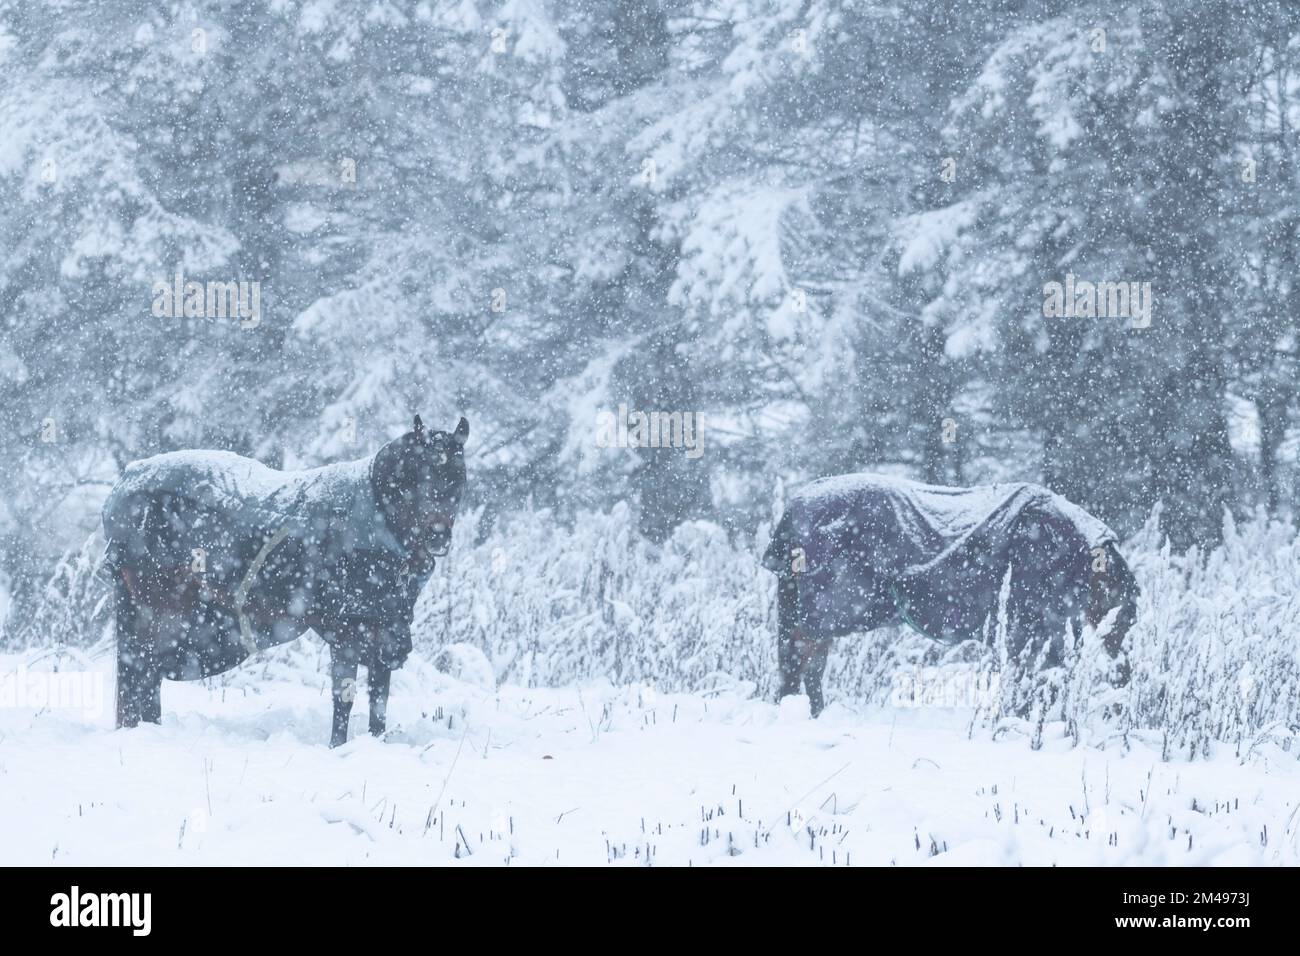 Deux chevaux avec tapis enneigés recherche de nourriture dans la neige pendant une tempête de neige Banque D'Images